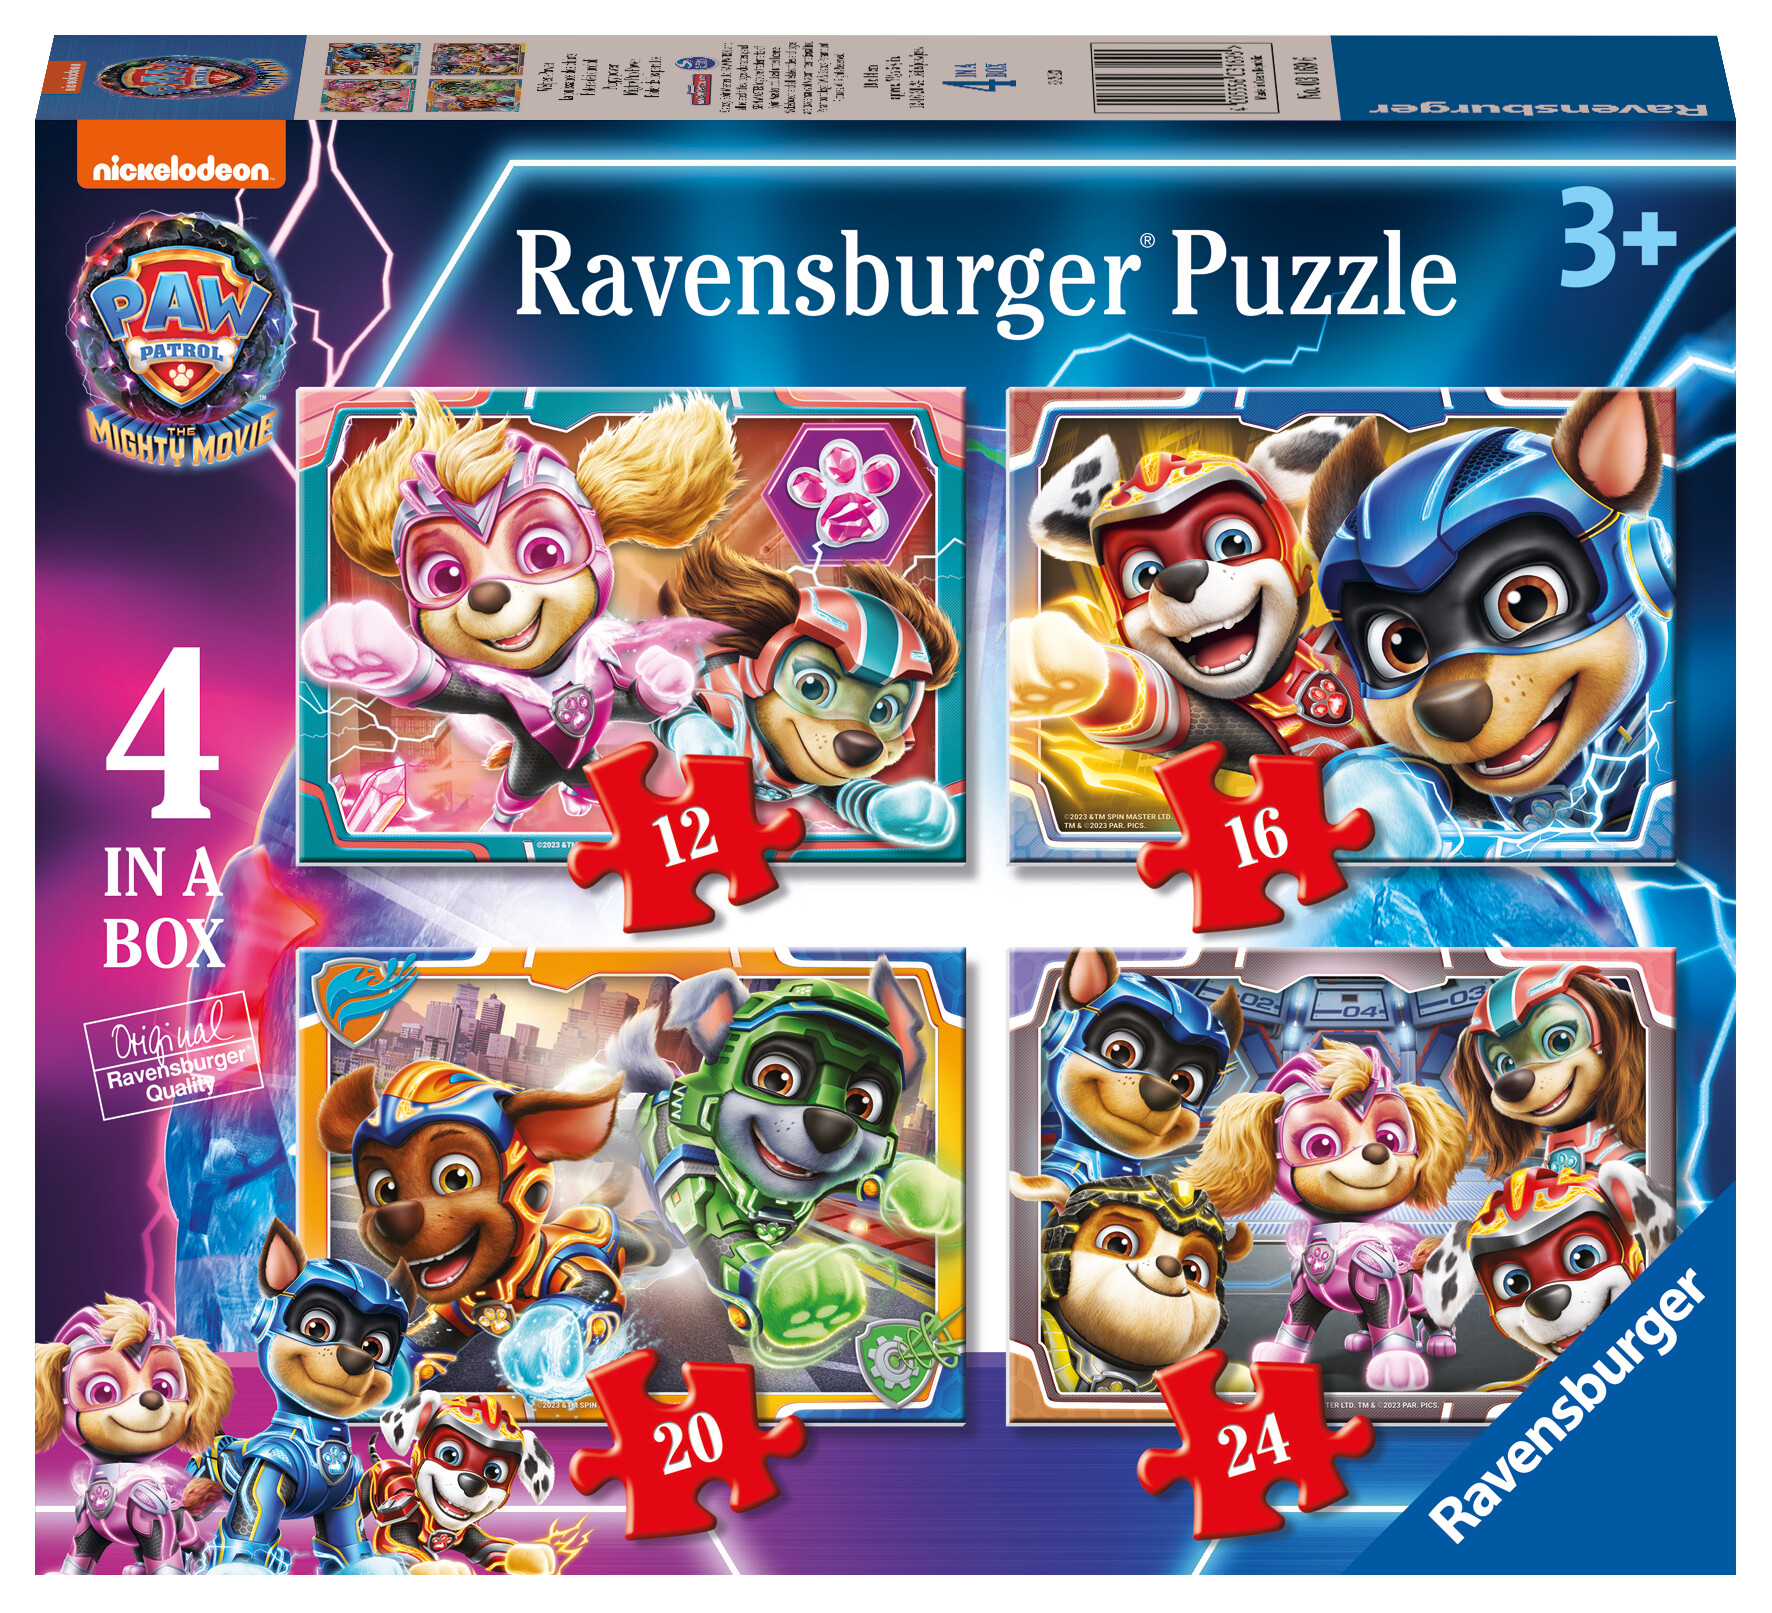 Ravensburger - puzzle paw patrol the mighty movie, collezione 4 in a box, 4 puzzle da 12-16-20-24 pezzi, età raccomandata 3+ anni - RAVENSBURGER